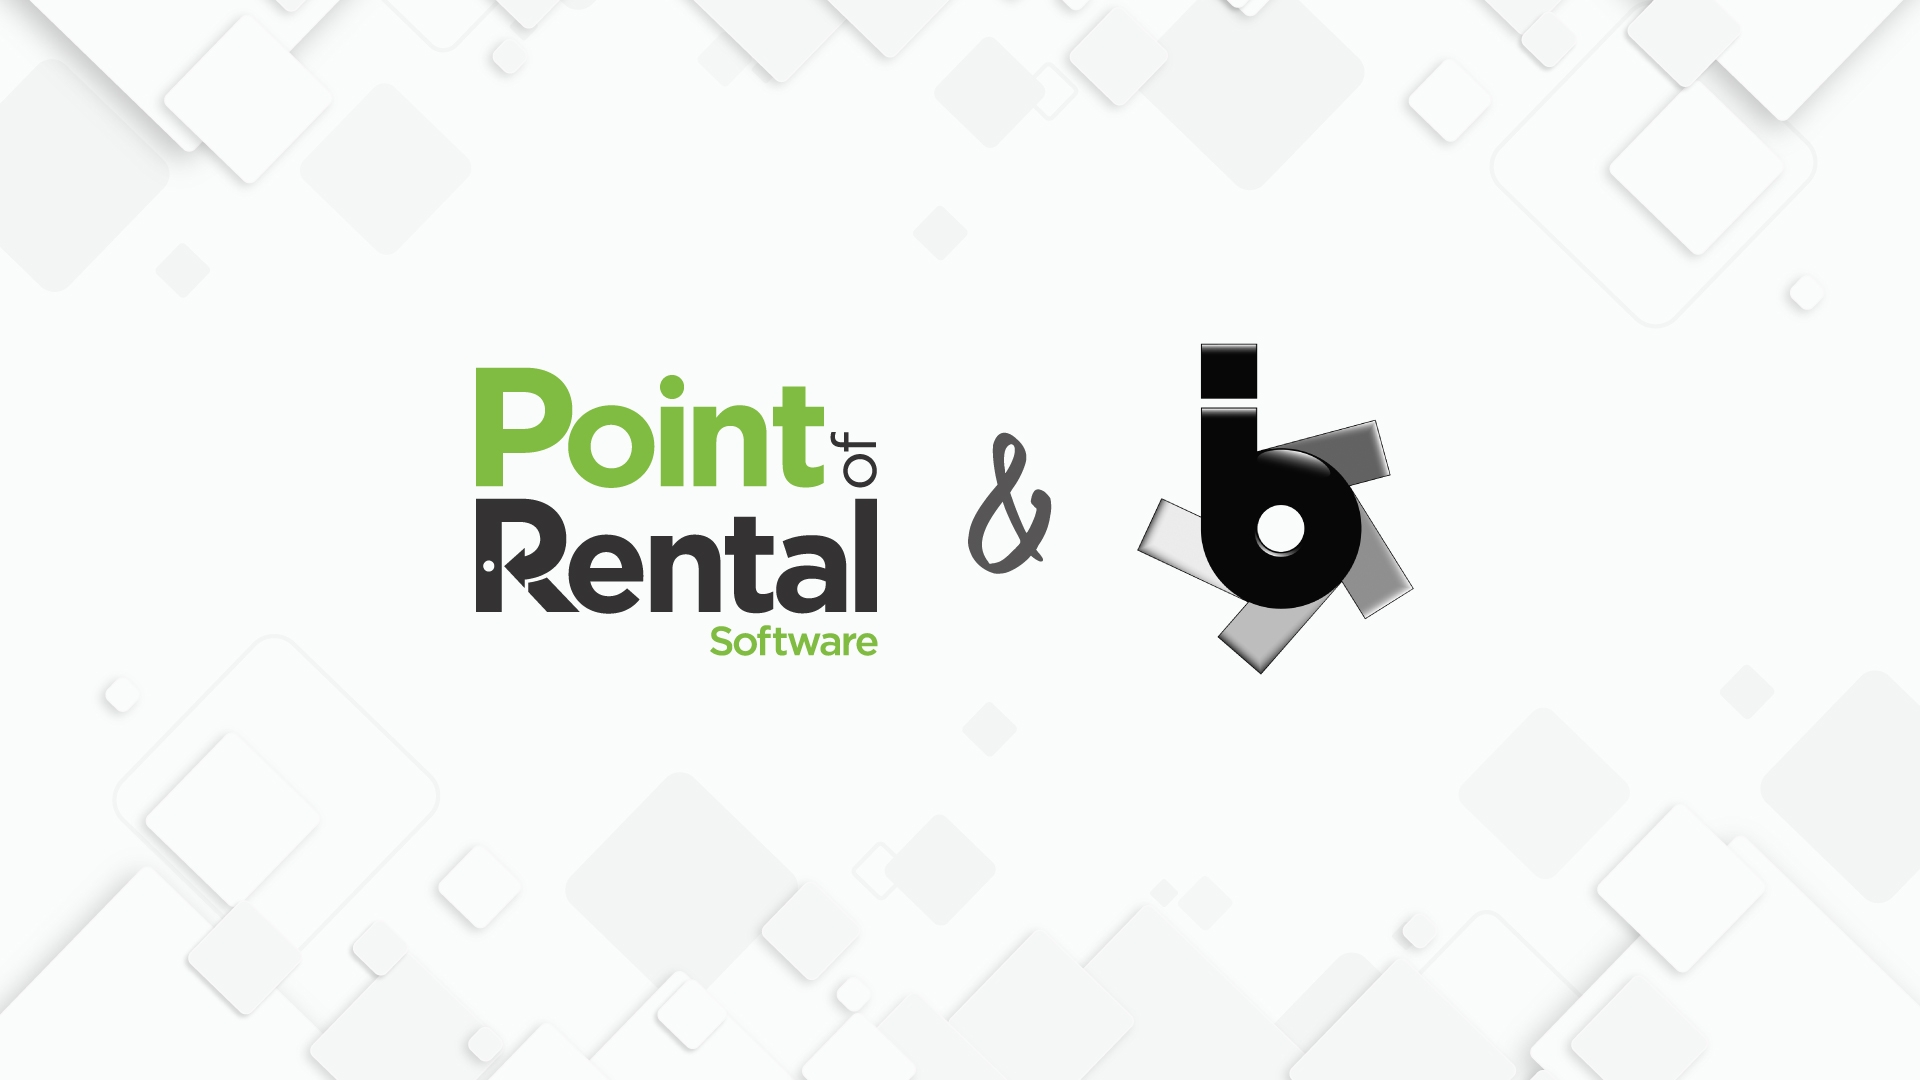 Point of Rental & bbi logos